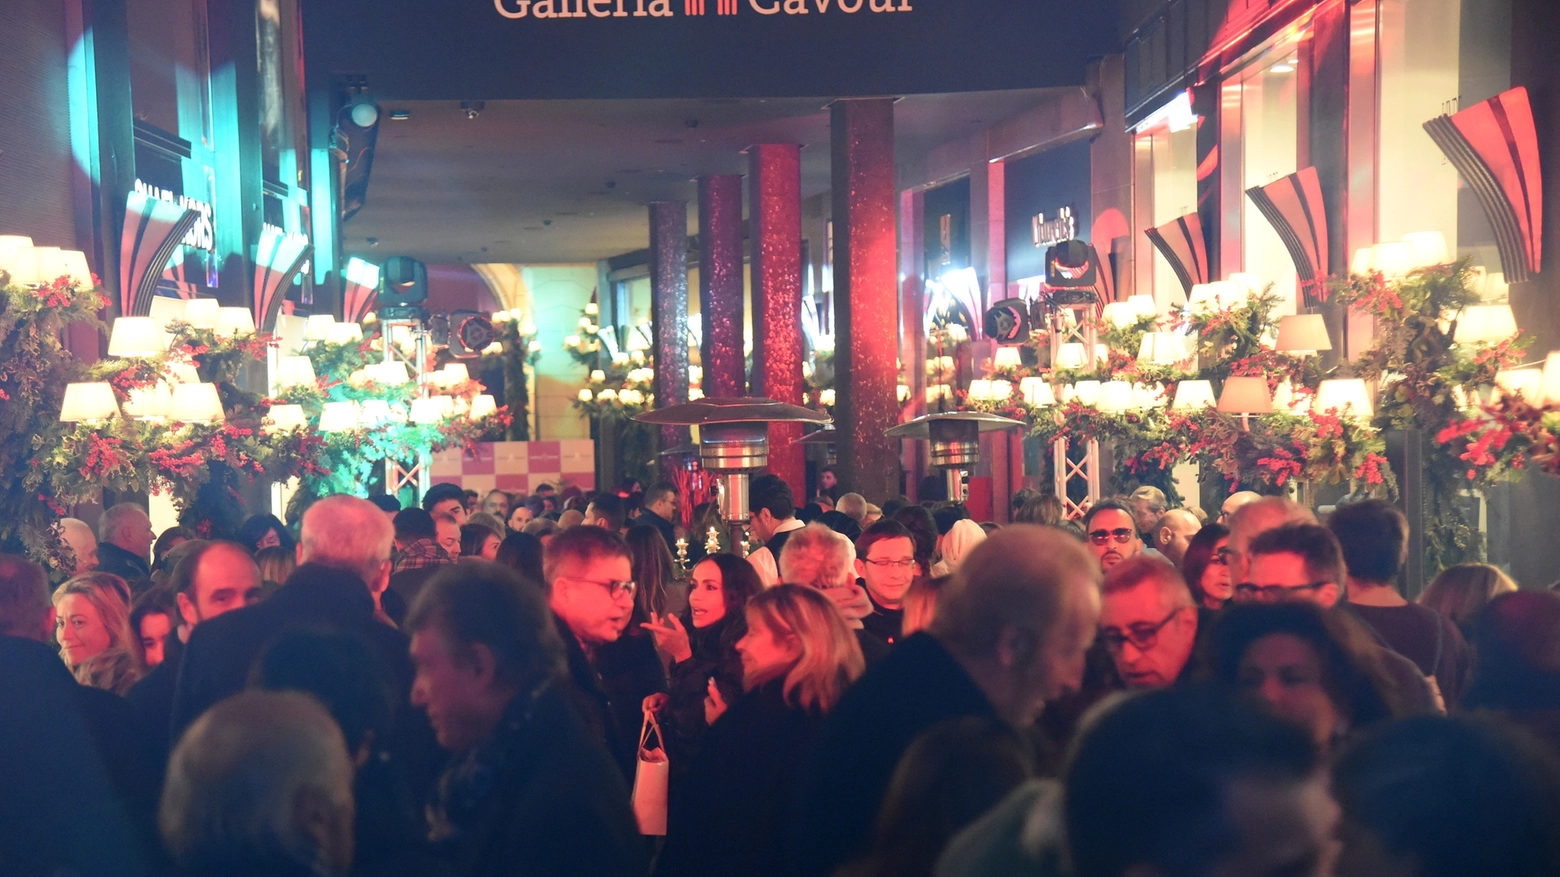 Bologna, in Galleria Cavour si accendono le luci del Natale 2017